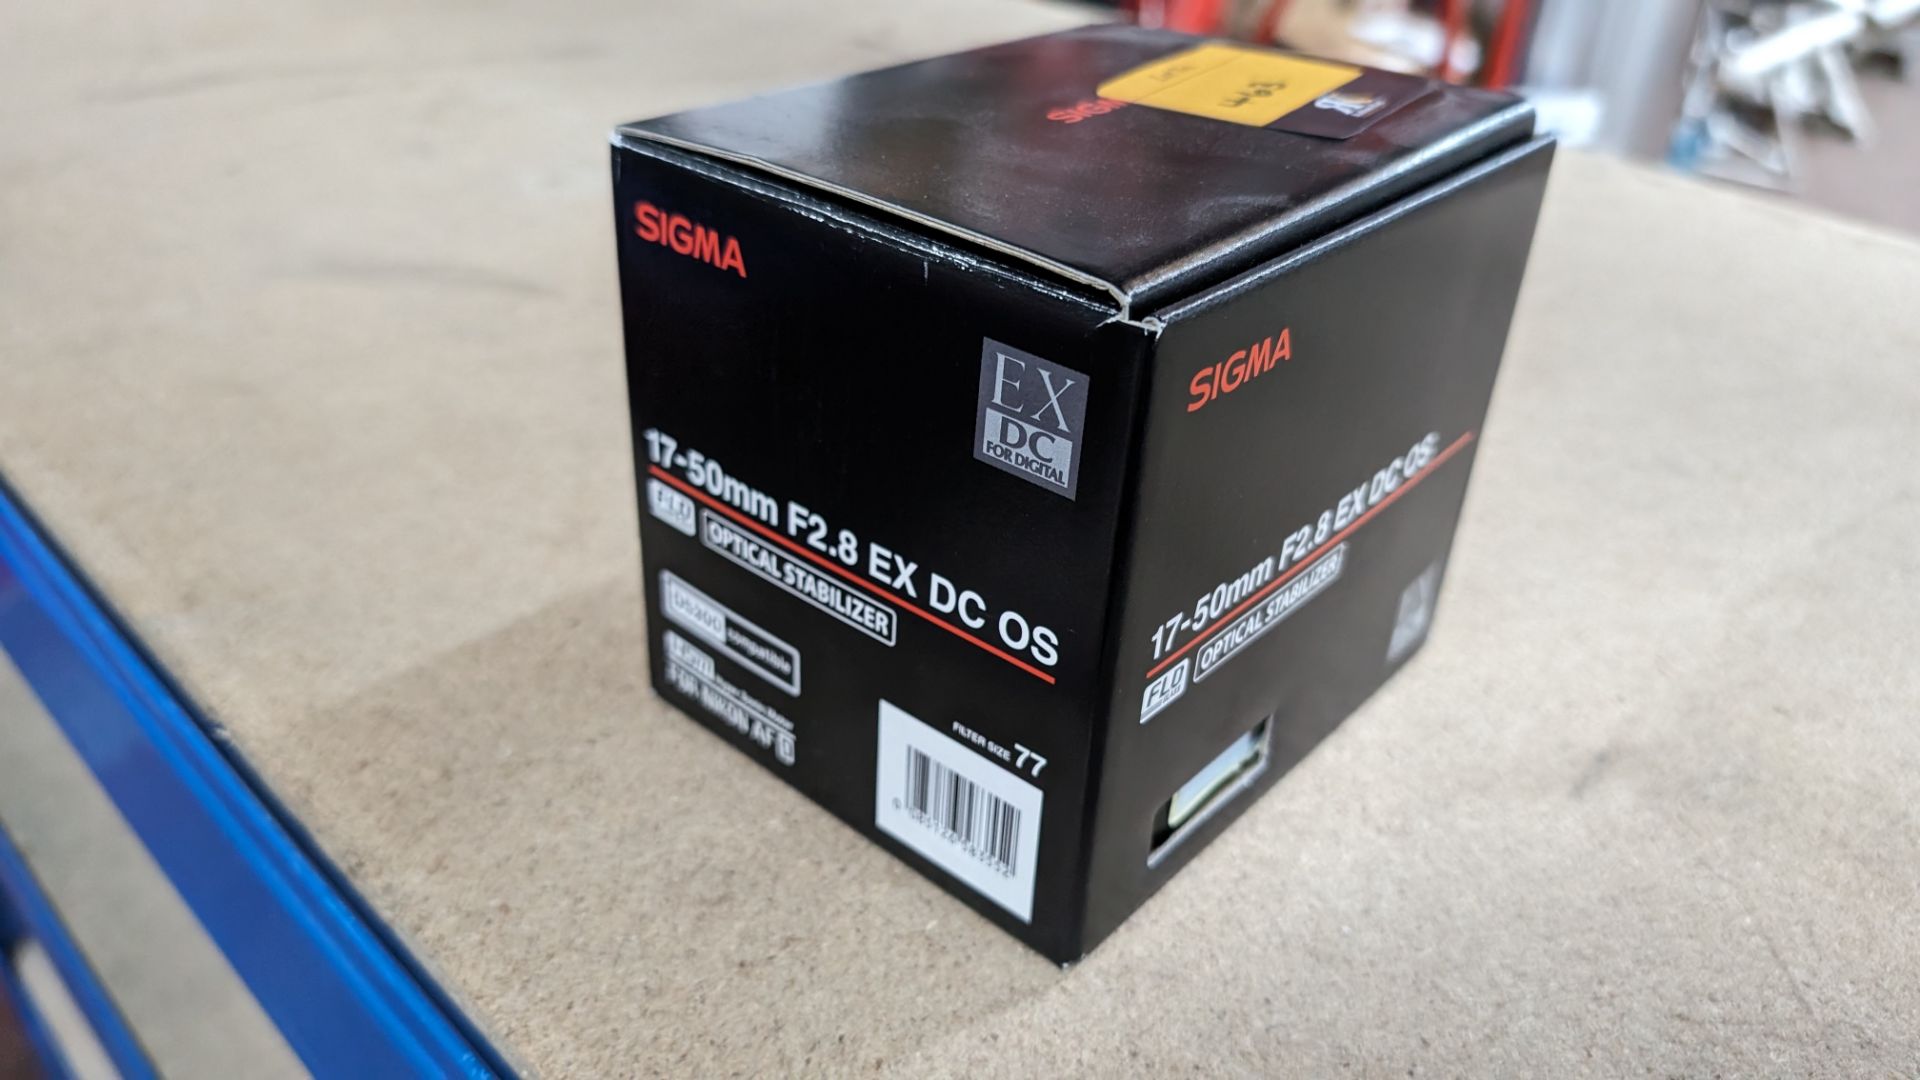 Sigma 17-50mm f2.8 EX DC OS optical stabilizer lens, including soft carry case - Image 5 of 6